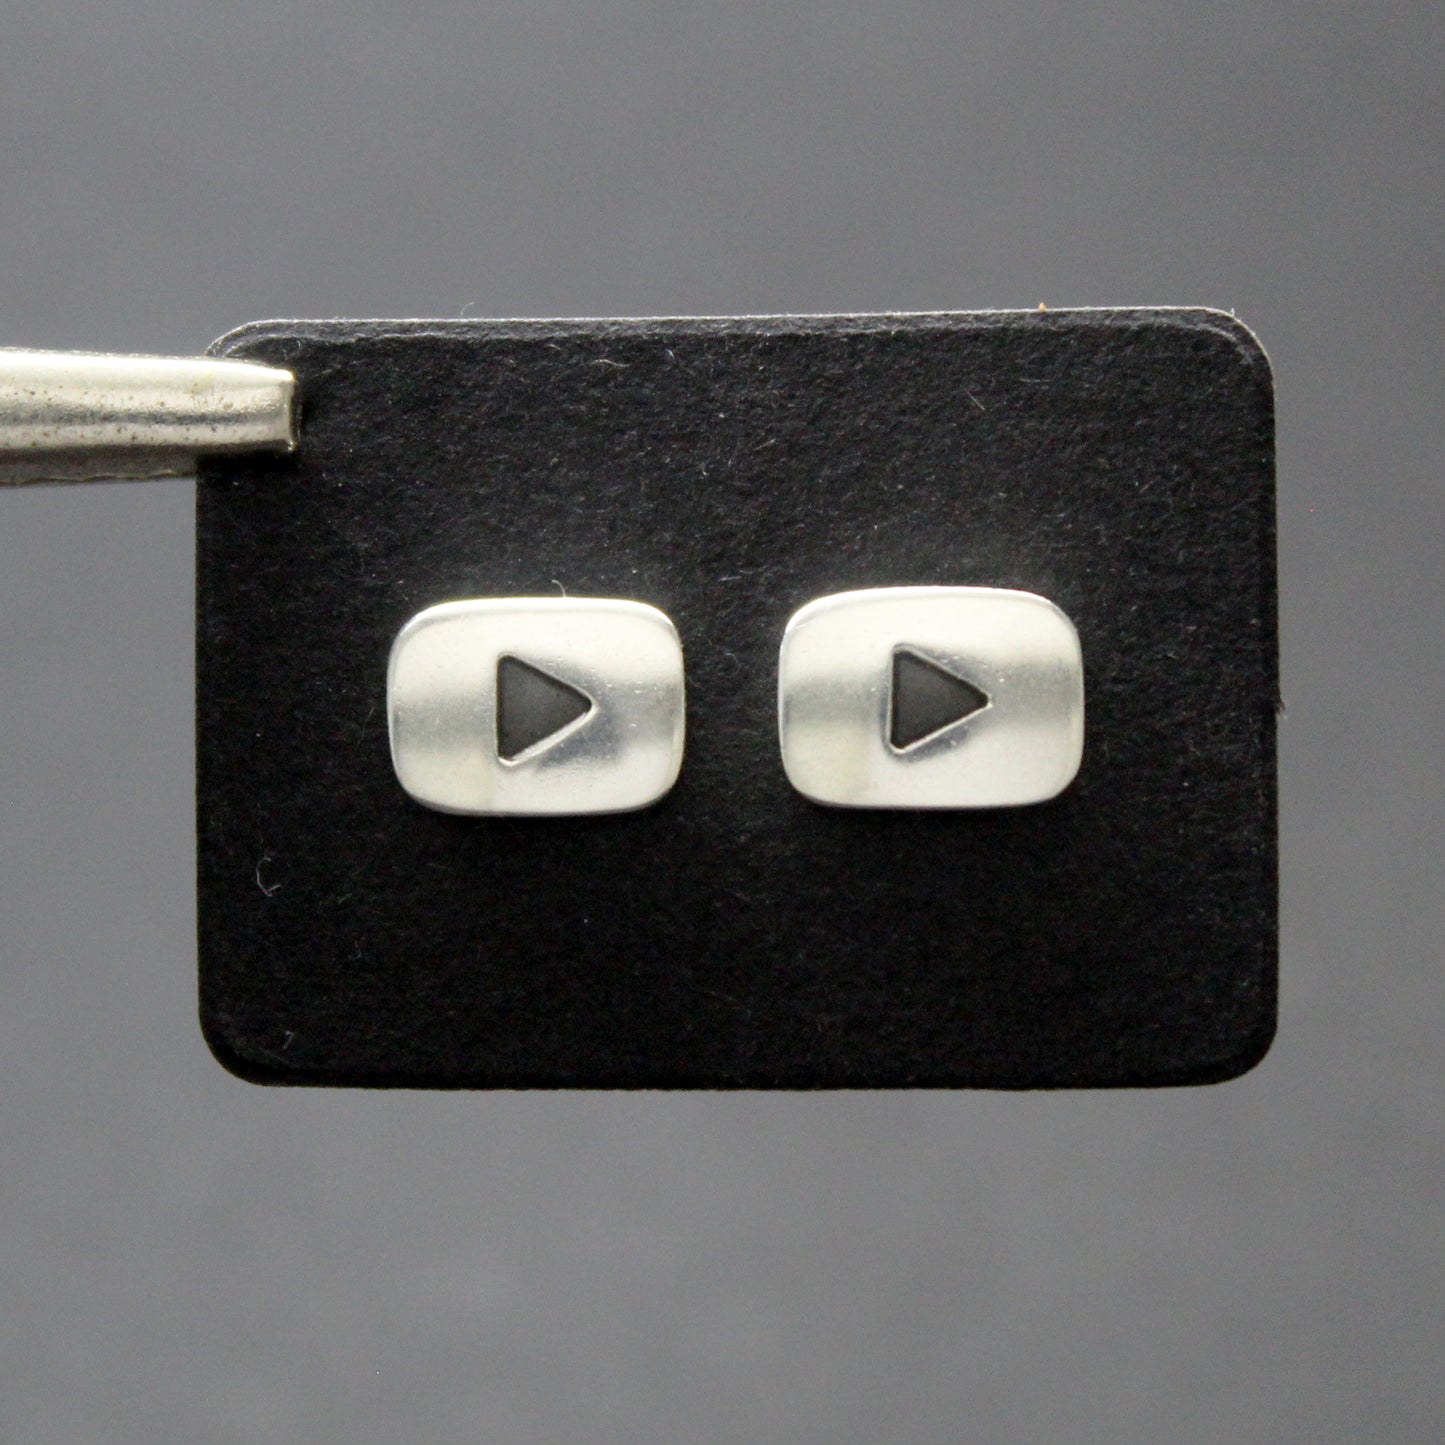 Youtube logo earrings in 925 silver